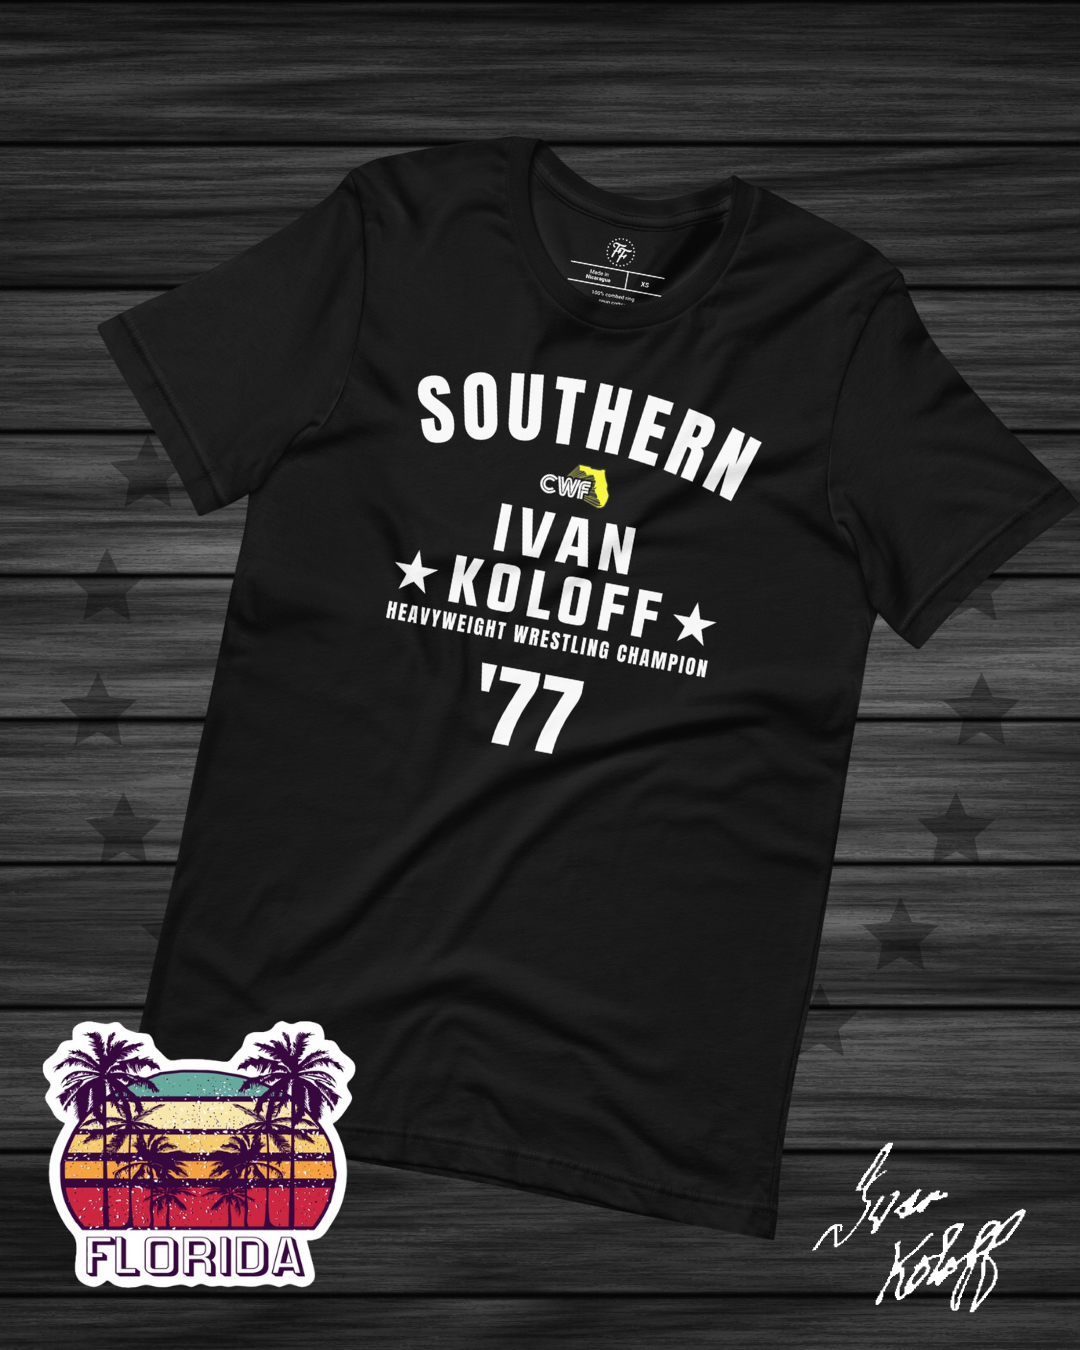 Ivan Koloff - Southern Heavyweight Champion '77 Shirt